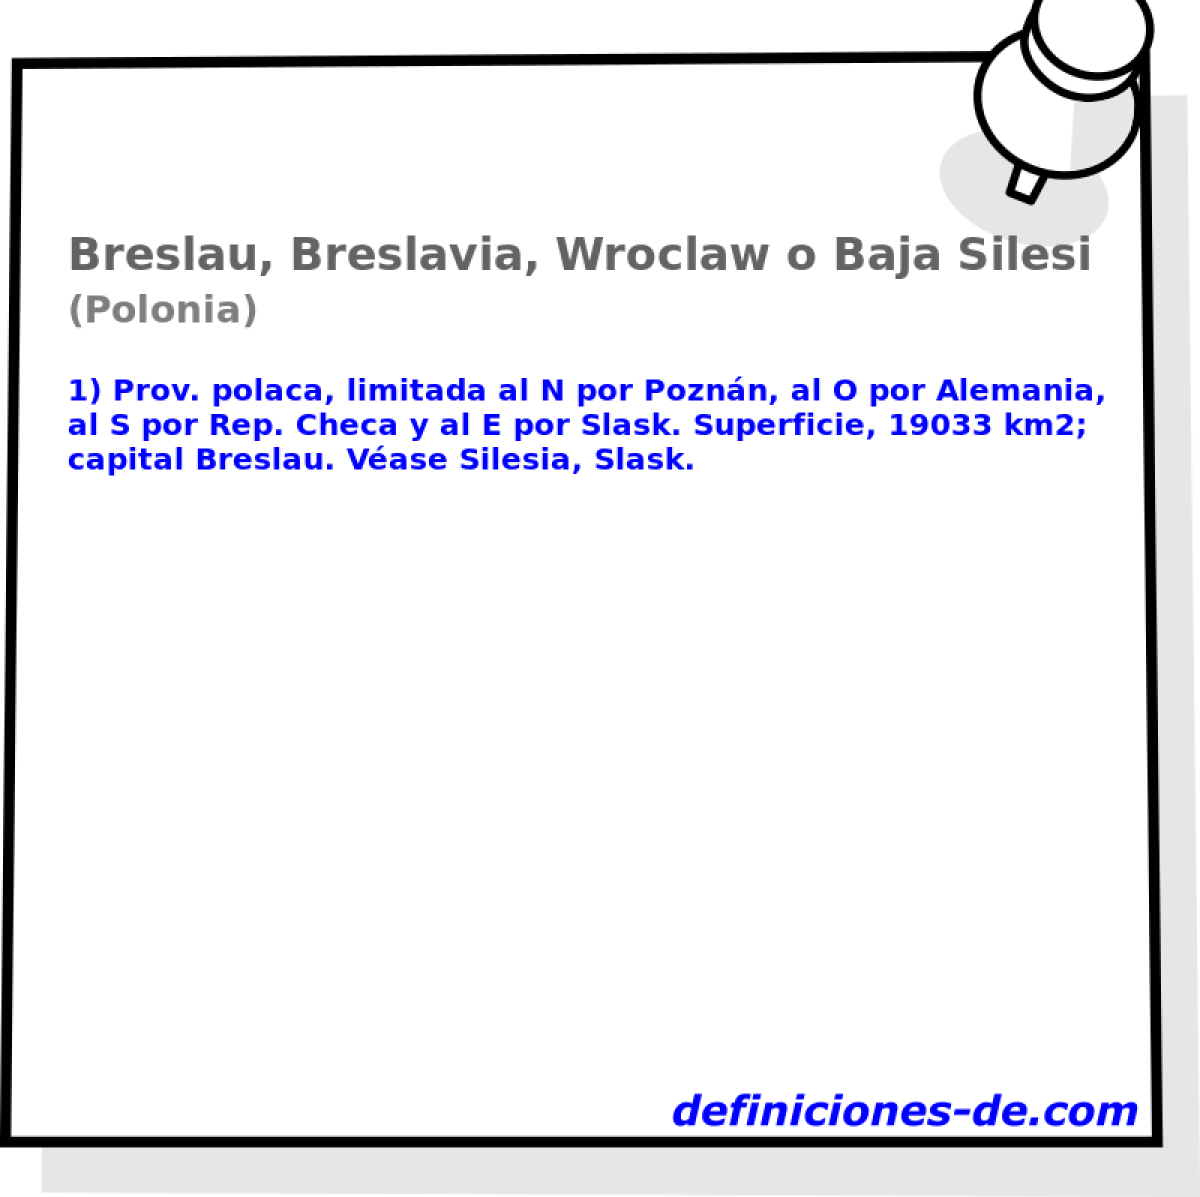 Breslau, Breslavia, Wroclaw o Baja Silesia (Polonia)